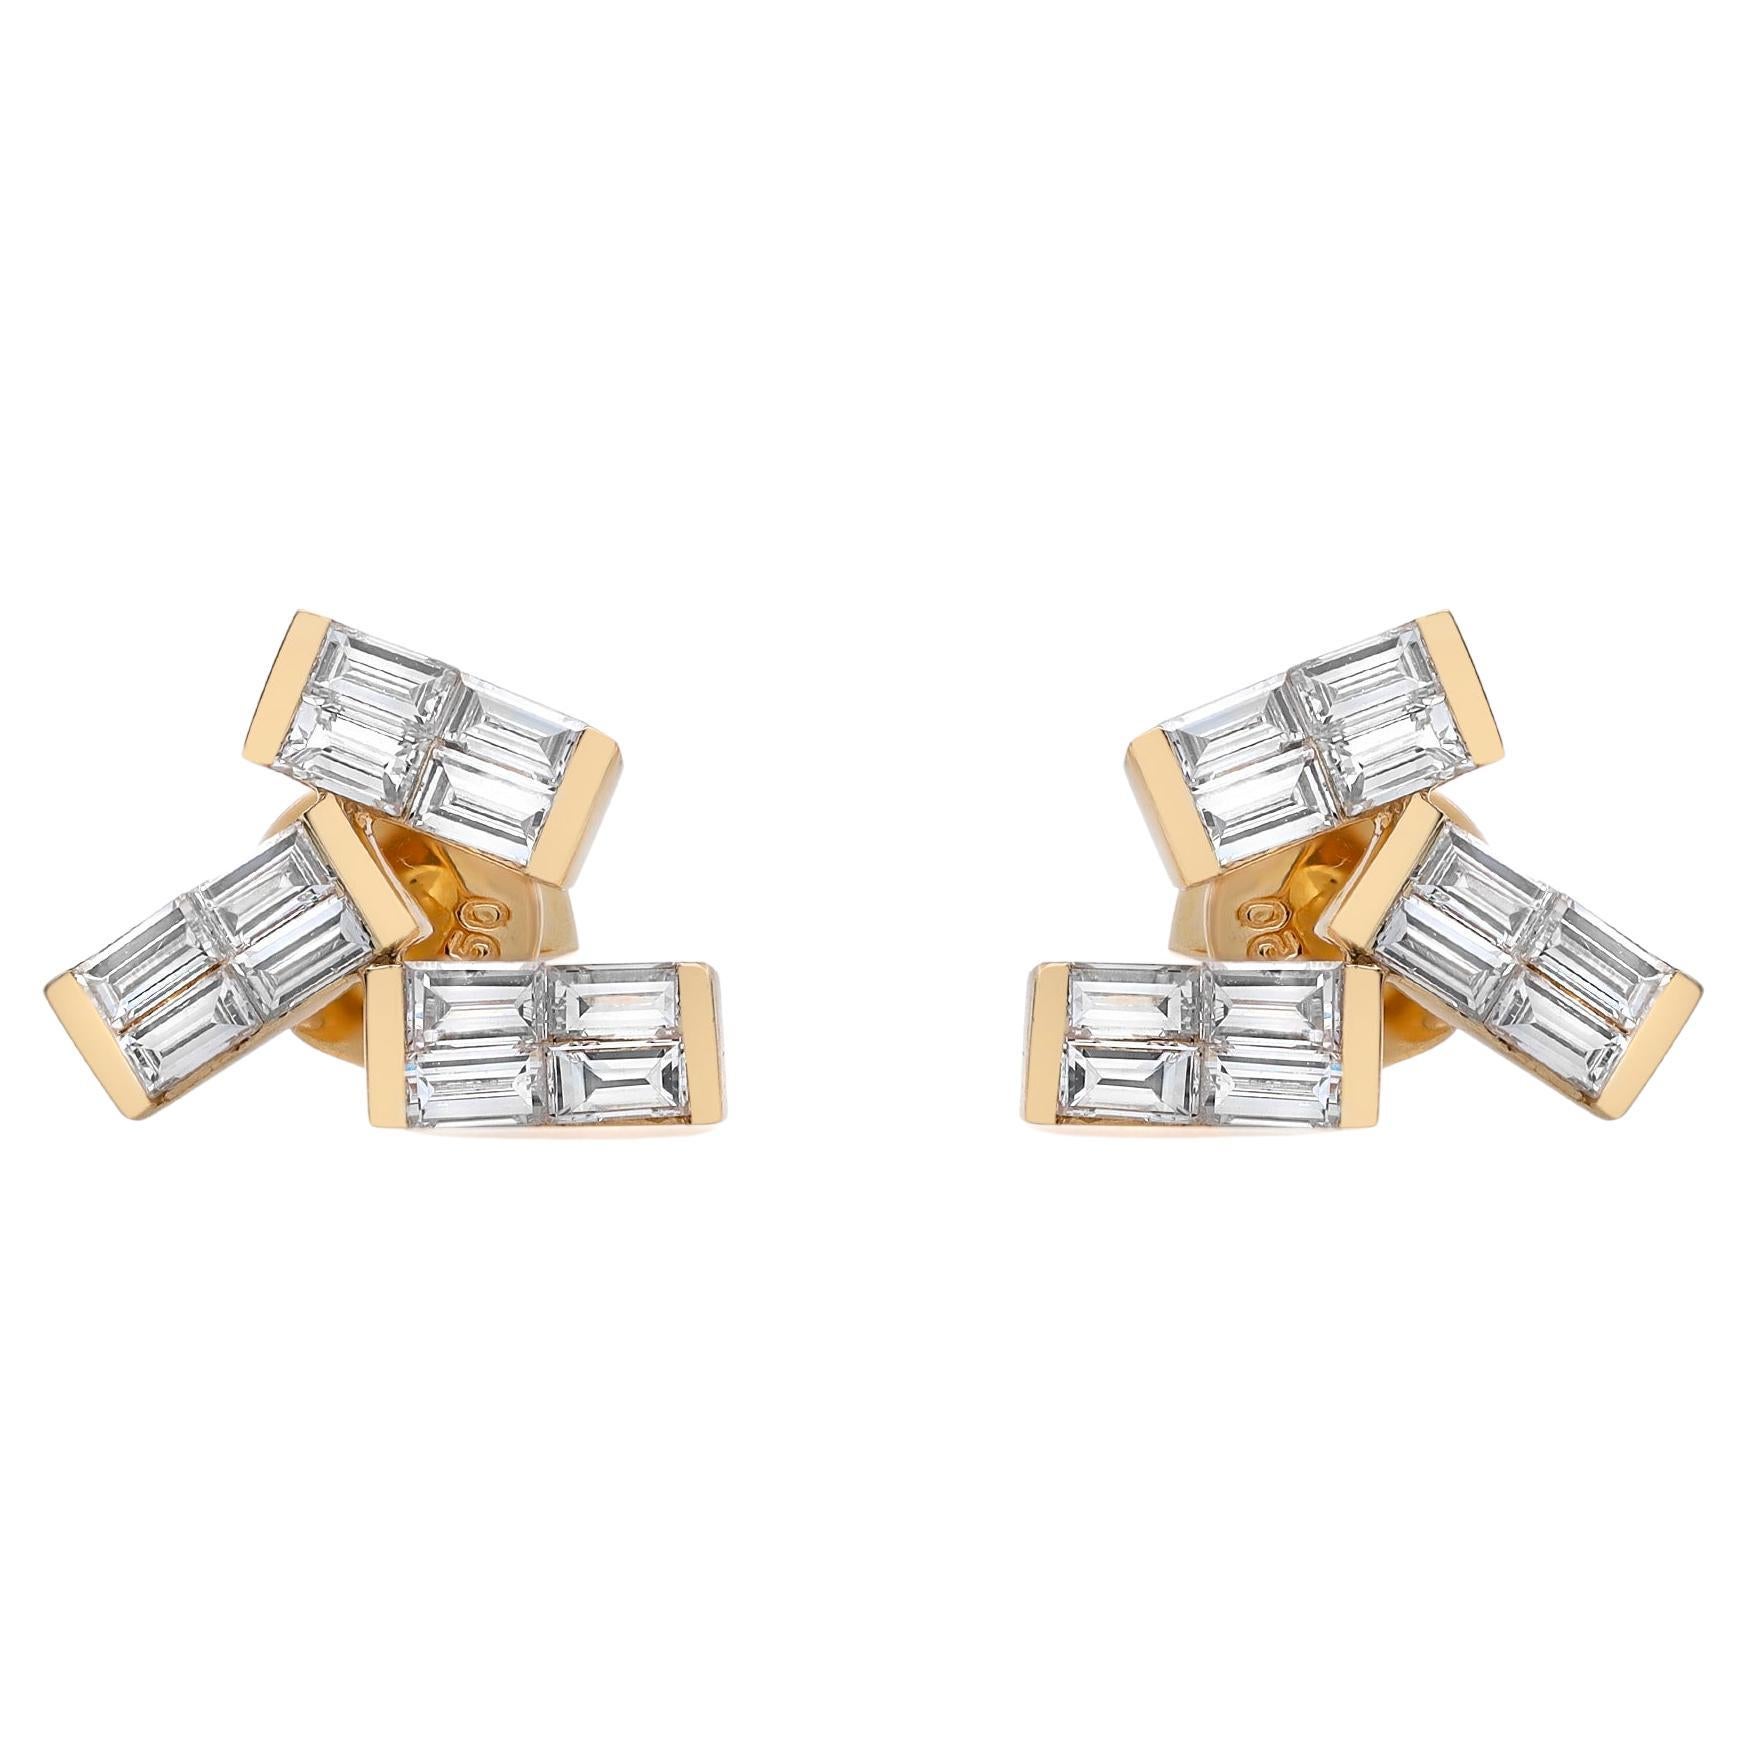 Rachel Koen 0.83Cttw Baguette Cut Diamond Stud Earrings 18K Yellow Gold